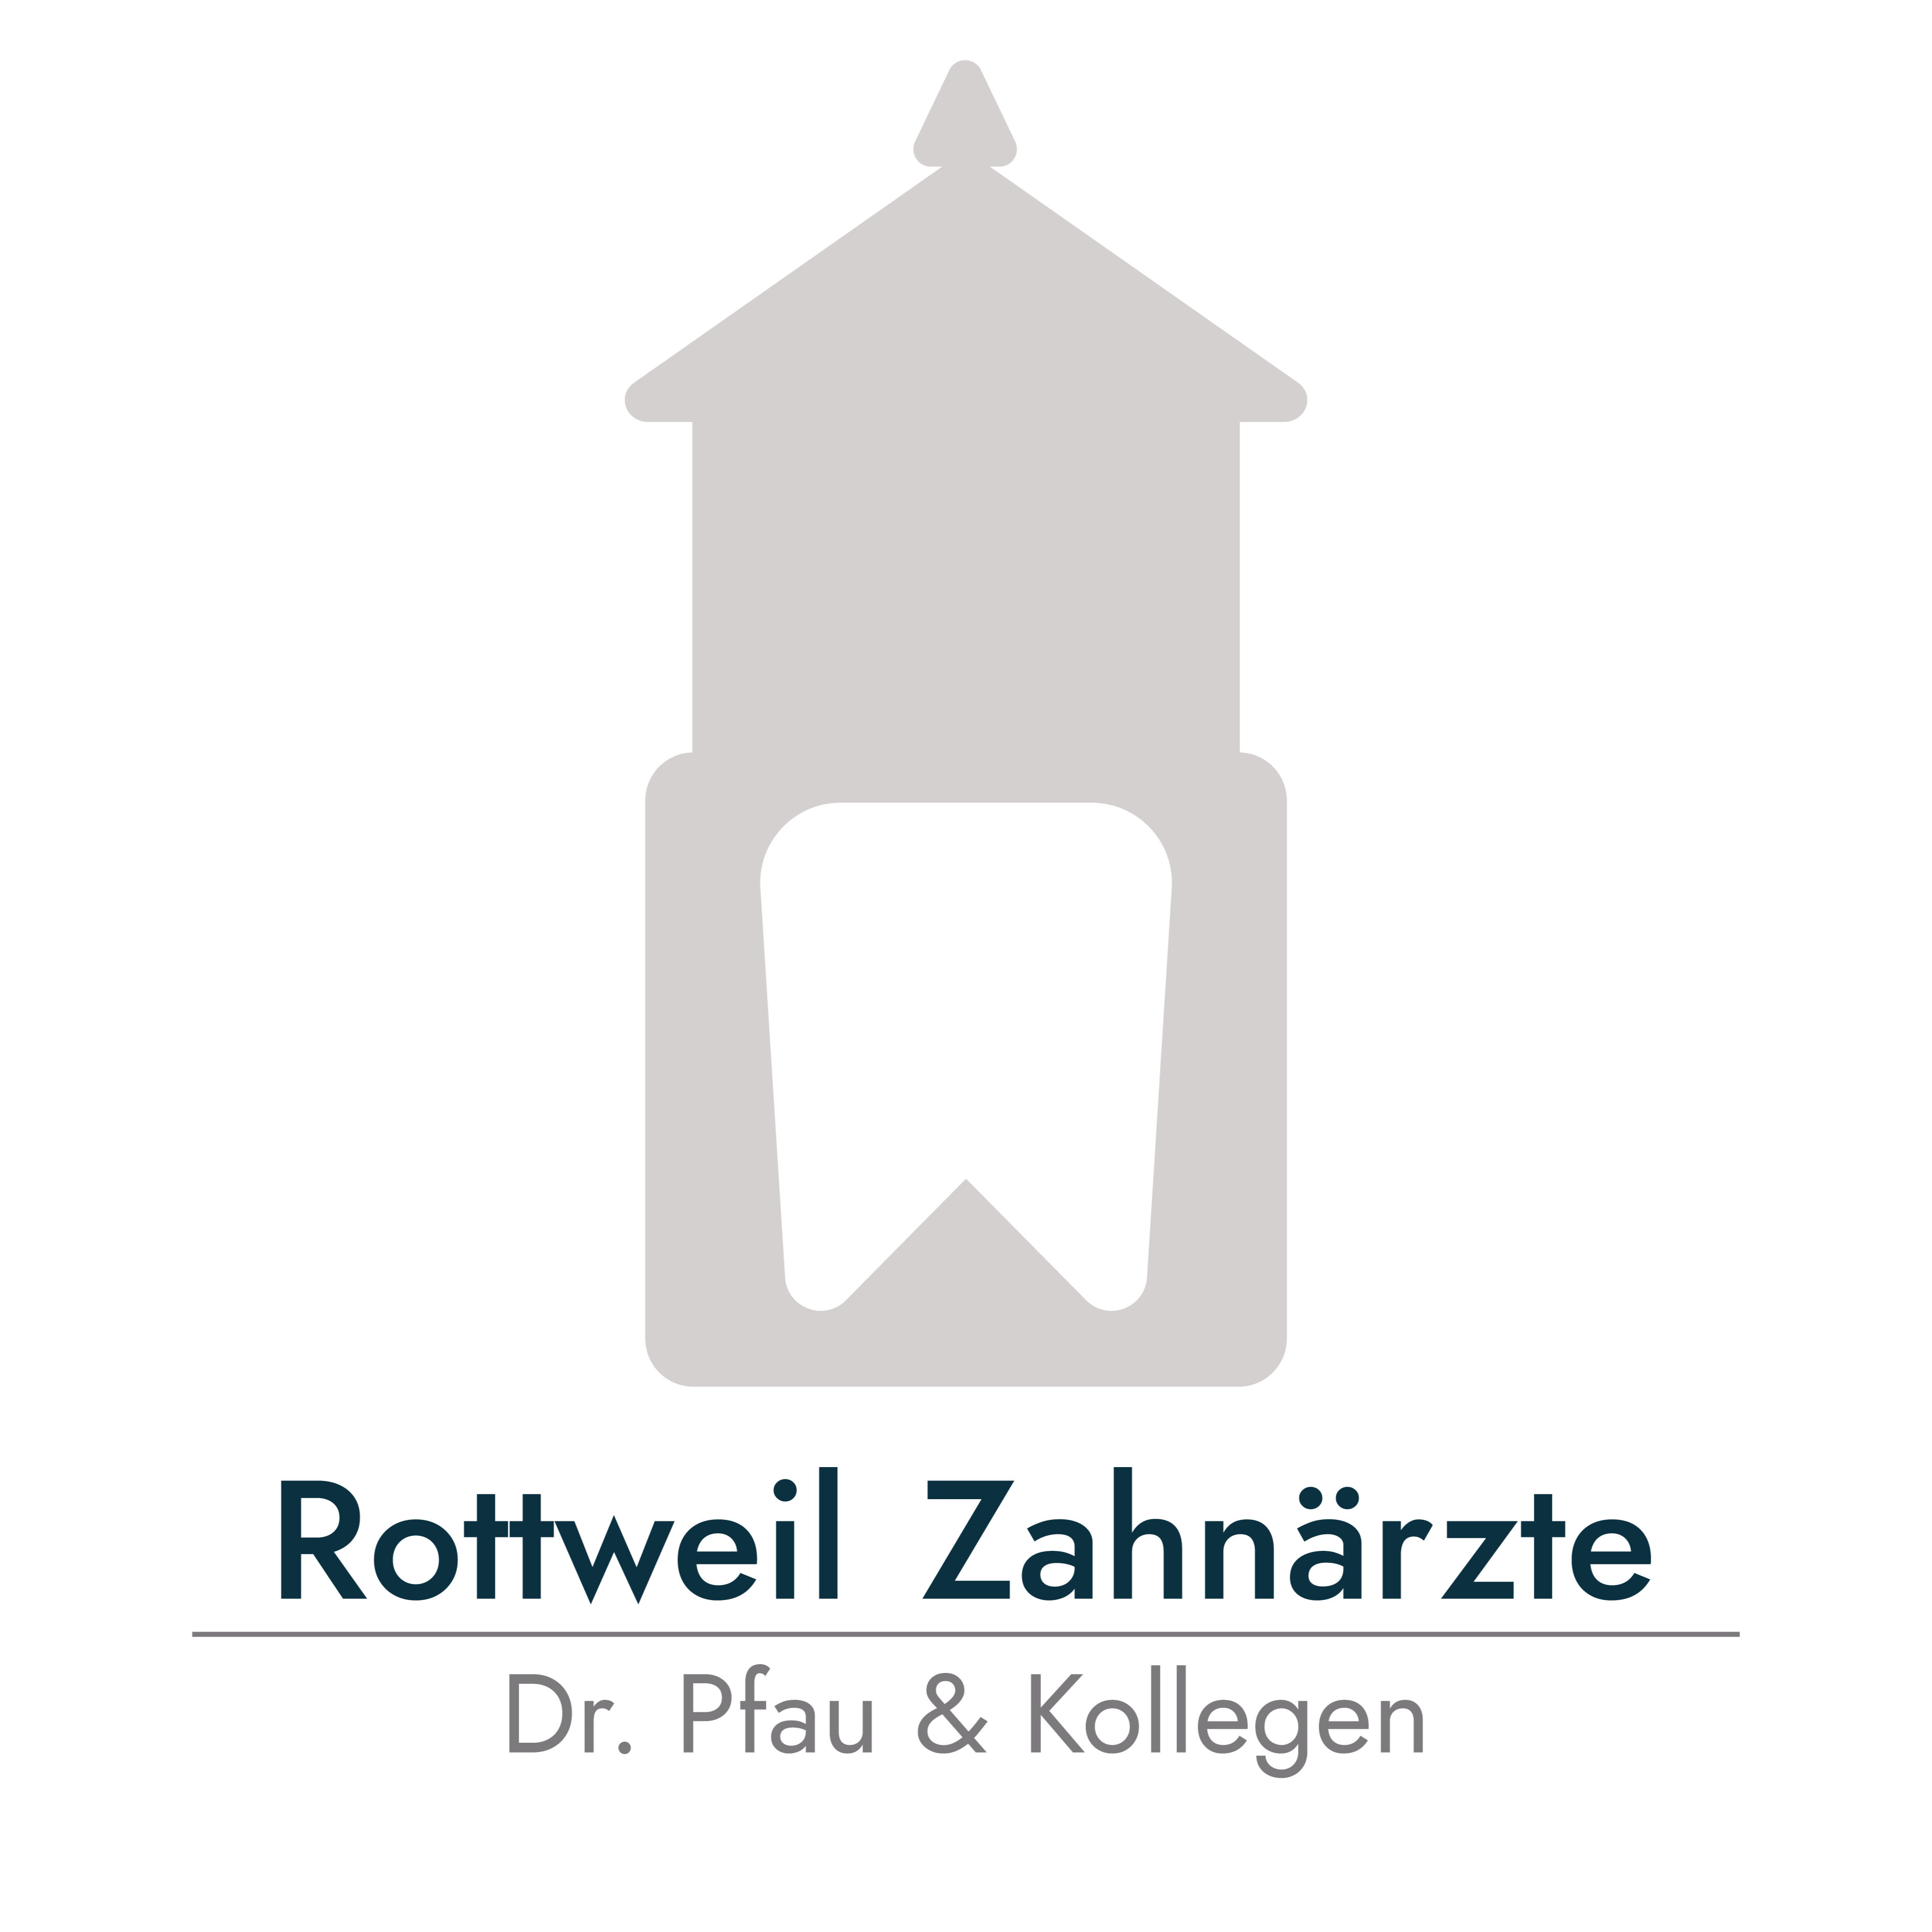 Rottweil Zahnärzte Dr. Pfau & Kollegen in Rottweil - Logo